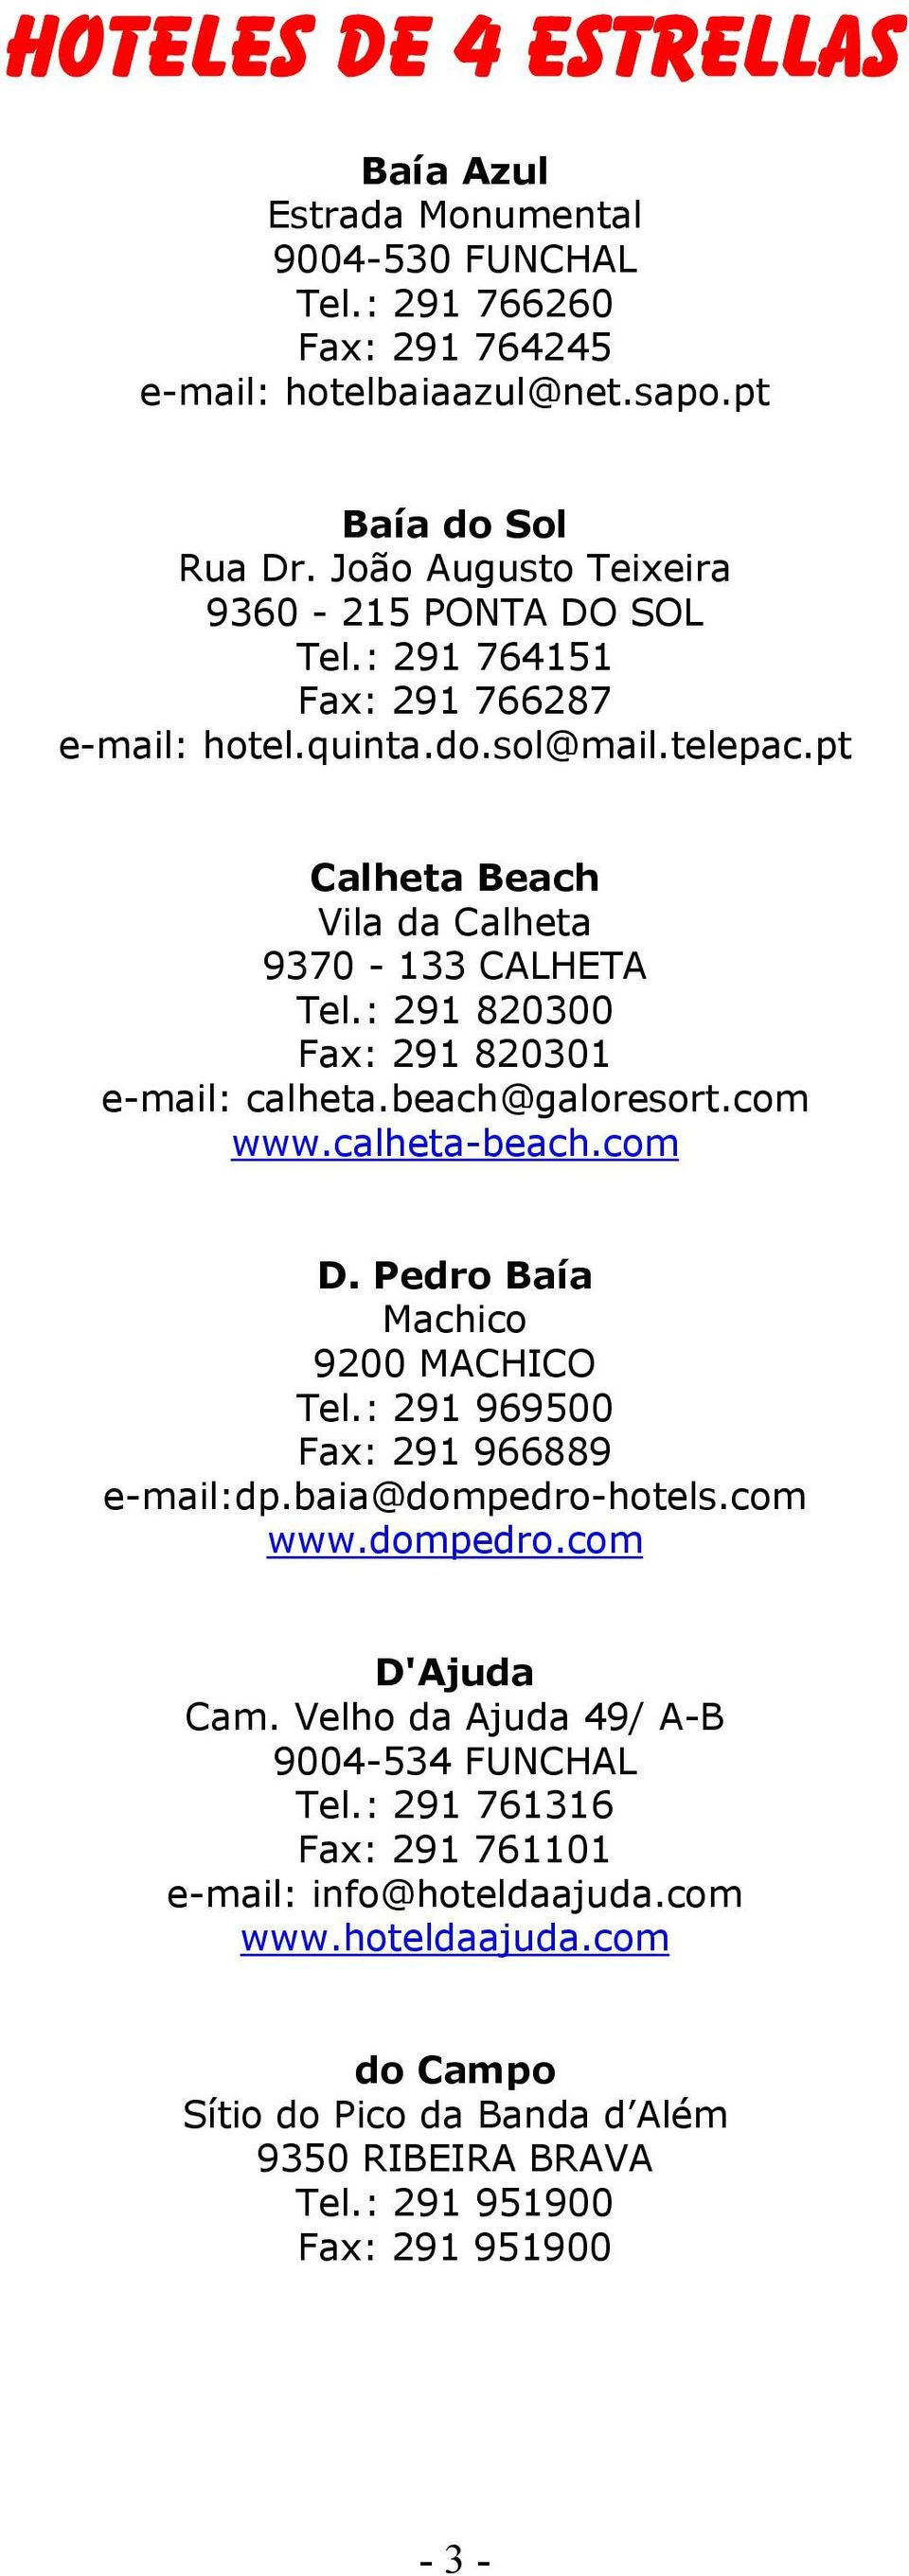 : 291 820300 Fax: 291 820301 e-mail: calheta.beach@galoresort.com www.calheta-beach.com D. Pedro Baía Machico 9200 MACHICO Tel.: 291 969500 Fax: 291 966889 e-mail:dp.baia@dompedro-hotels.